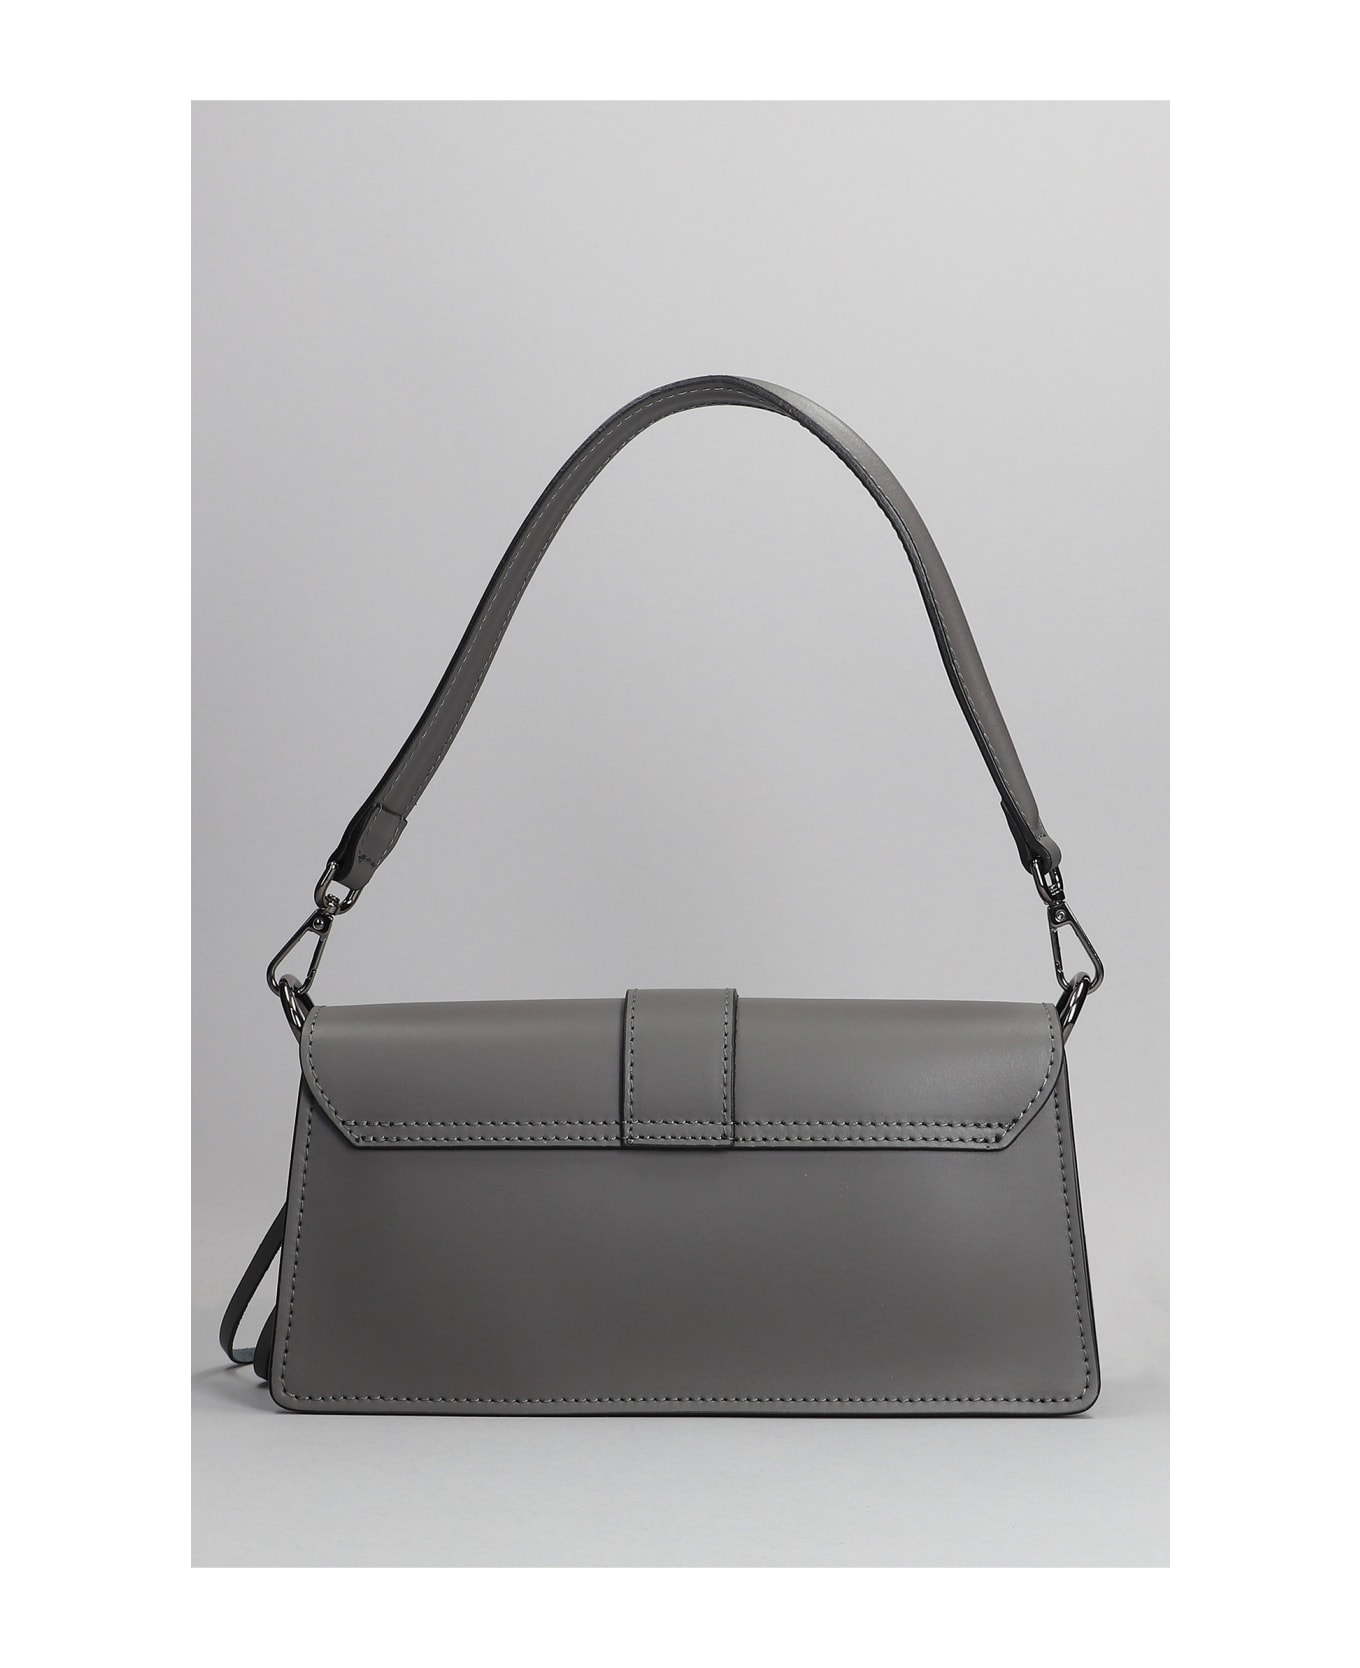 Marc Ellis Lauren Hand Bag In Grey Leather - grey